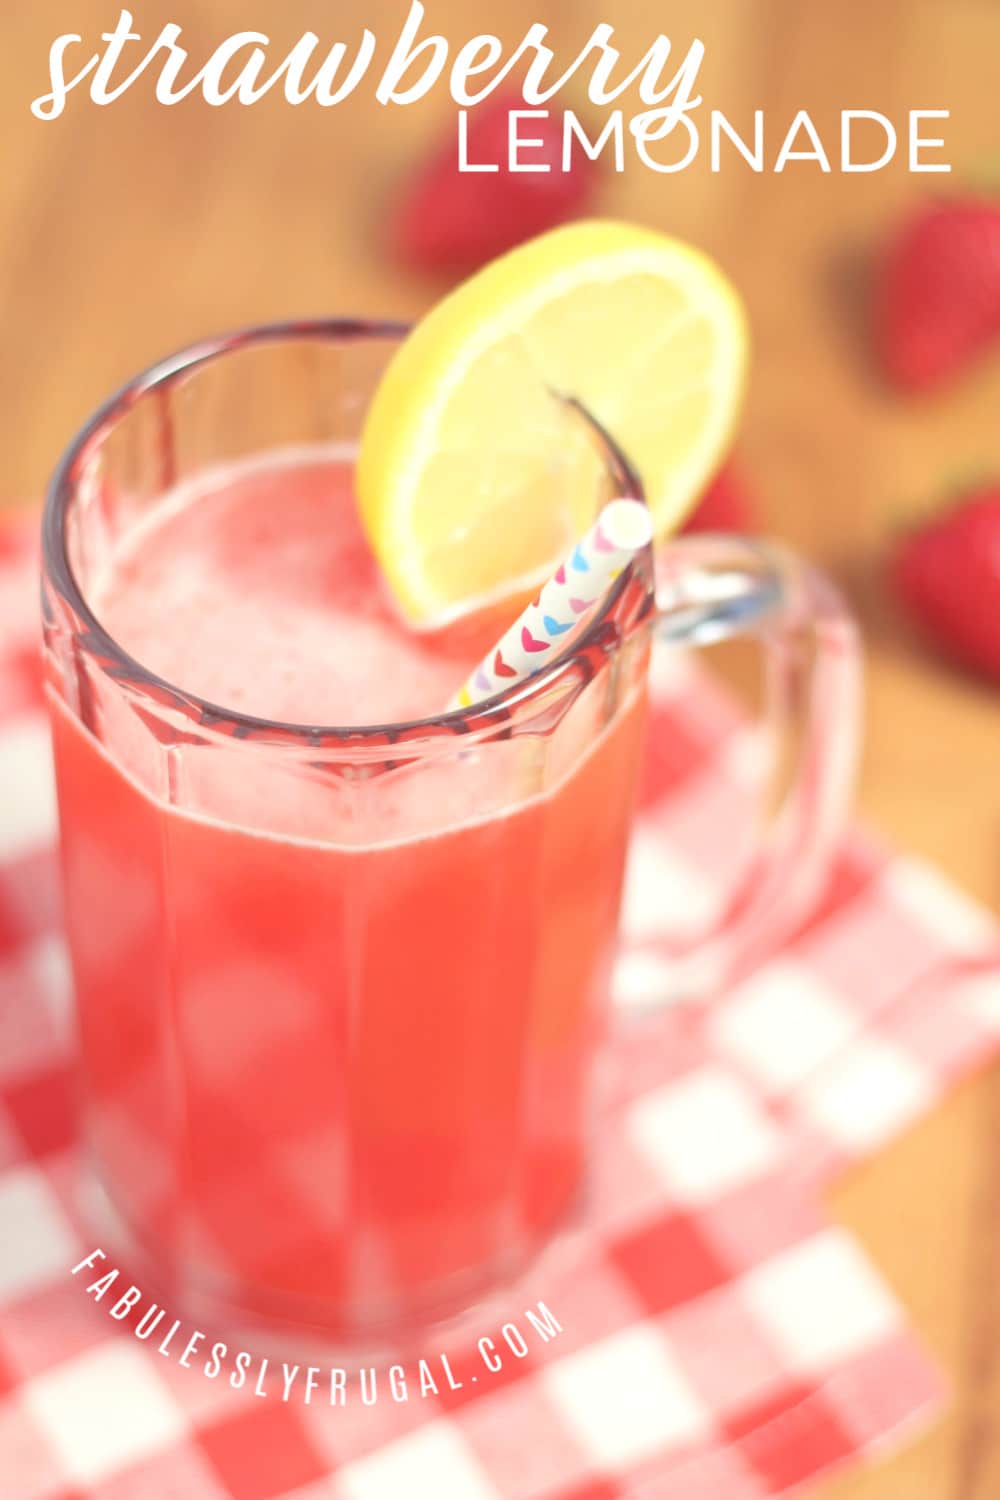 How to make homemade strawberry lemonade